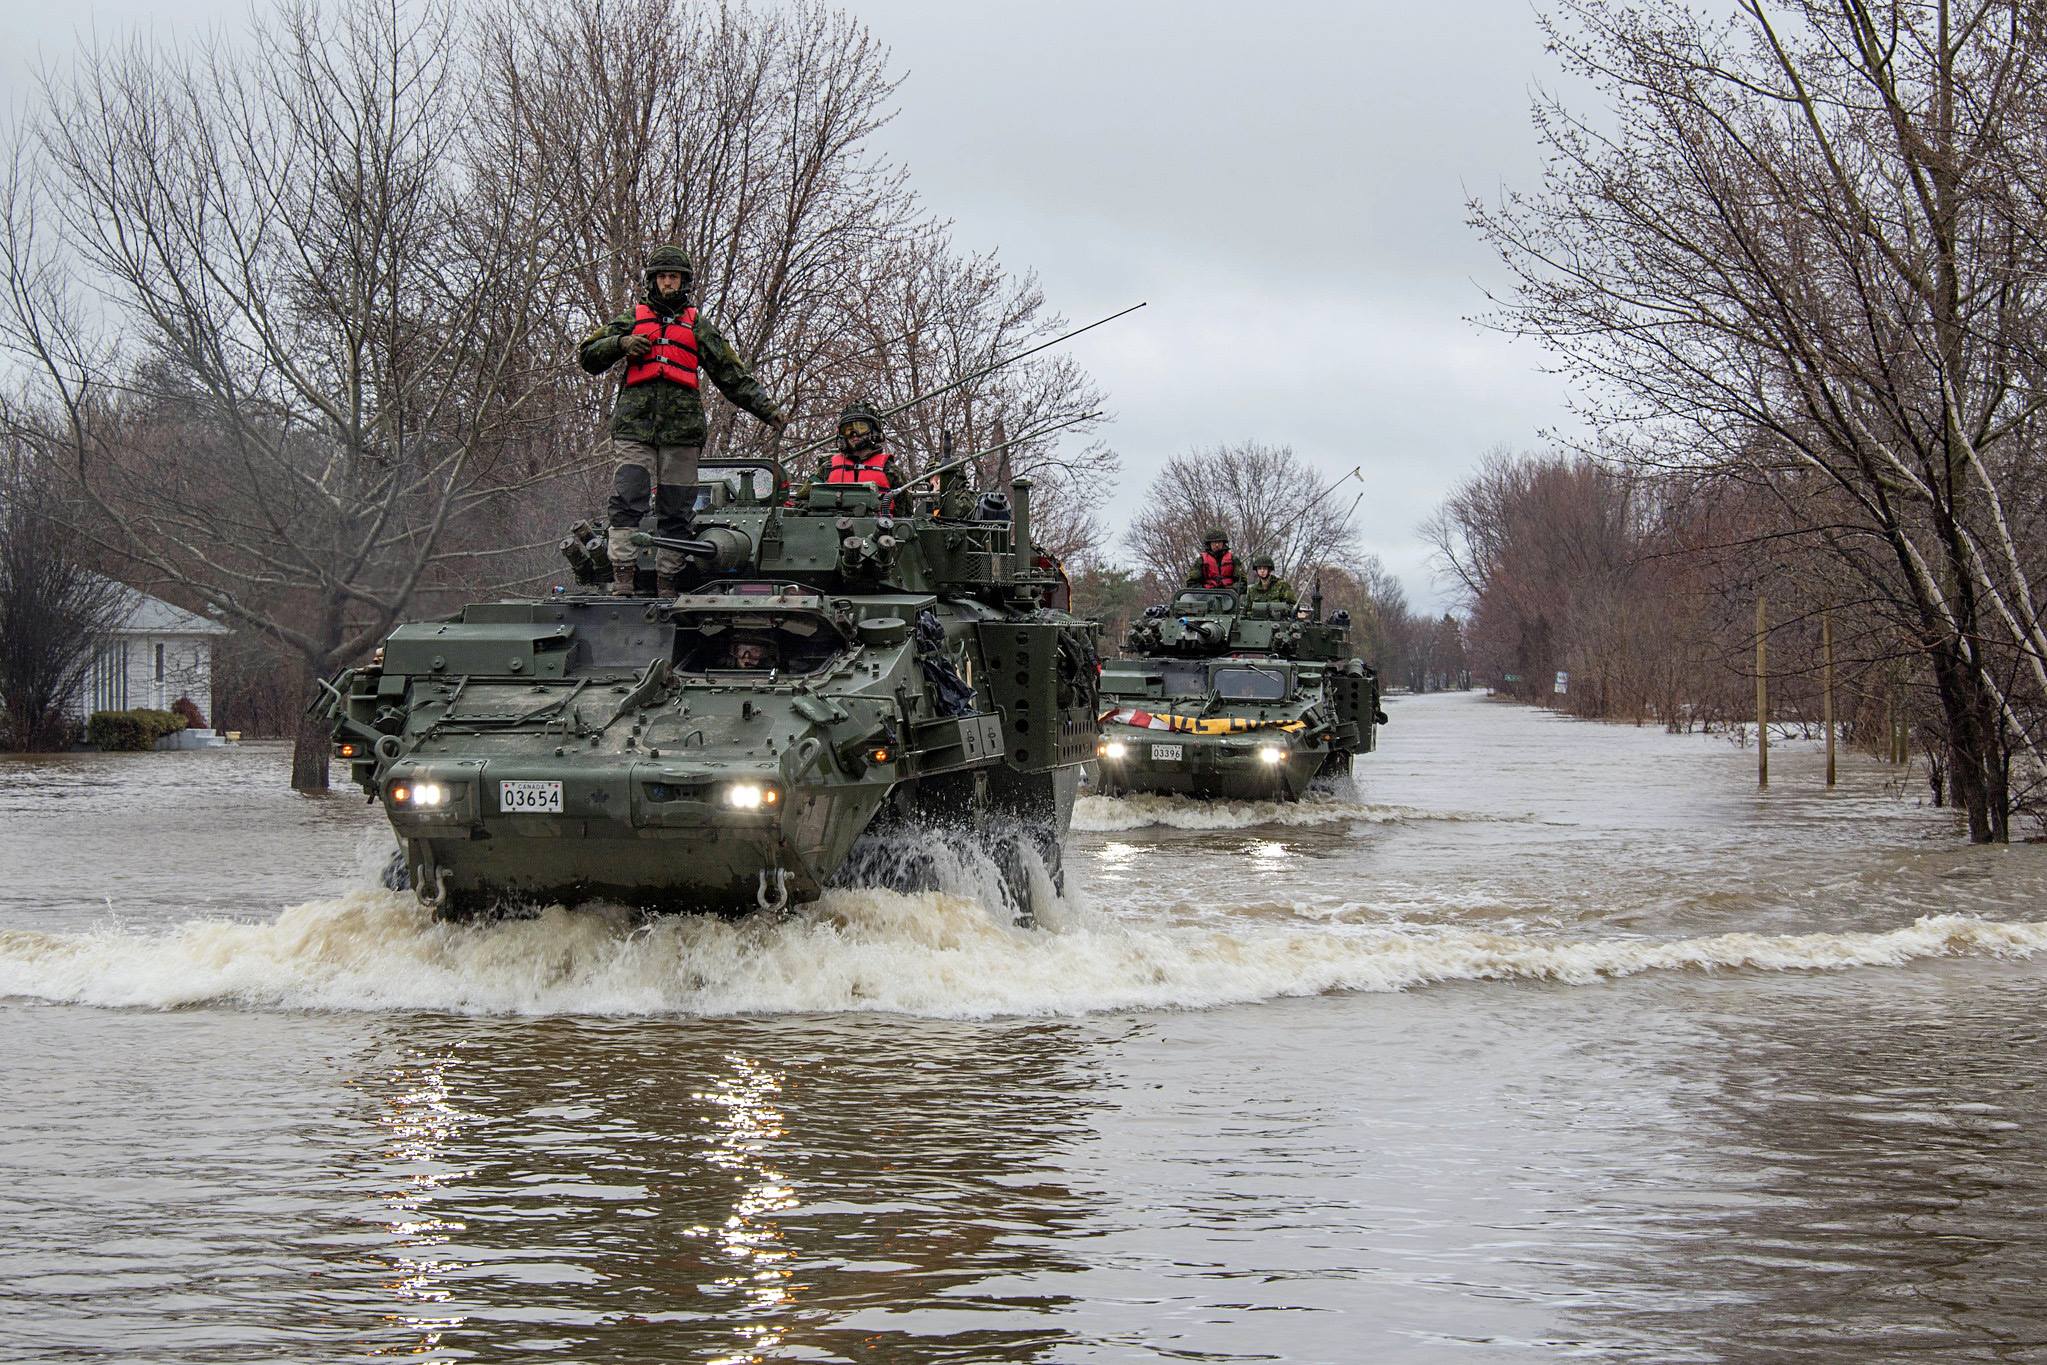 Military aid for flood